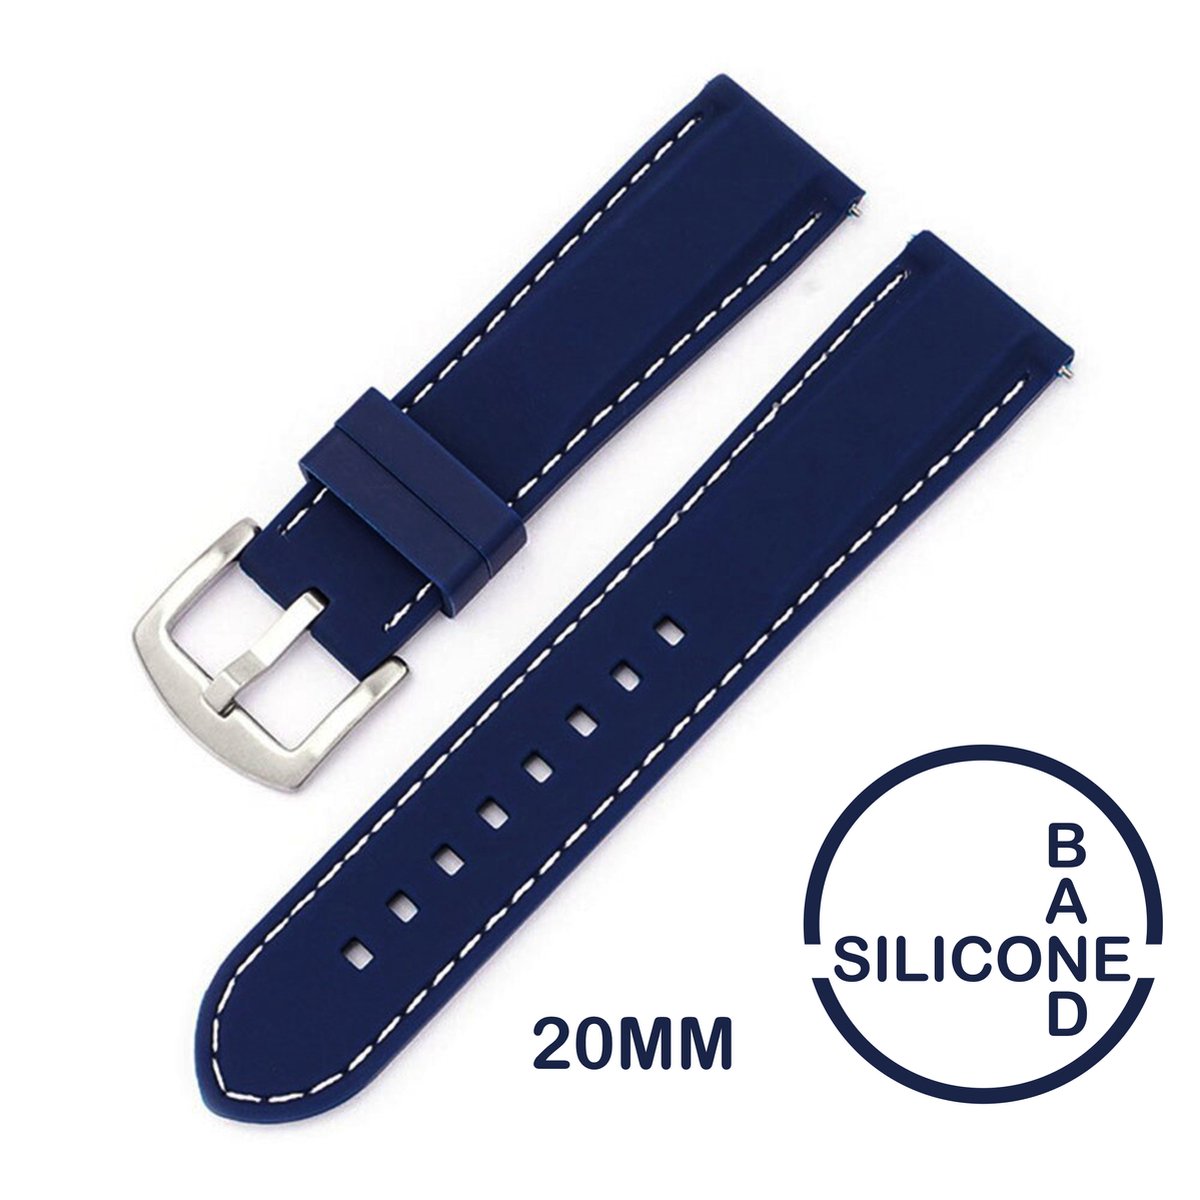 20mm Rubber Siliconen horlogeband Blauw met witte stiksels passend op o.a Casio Seiko Citizen en alle andere merken - 20 mm Bandje - blauw - Horlogebandje horlogeband